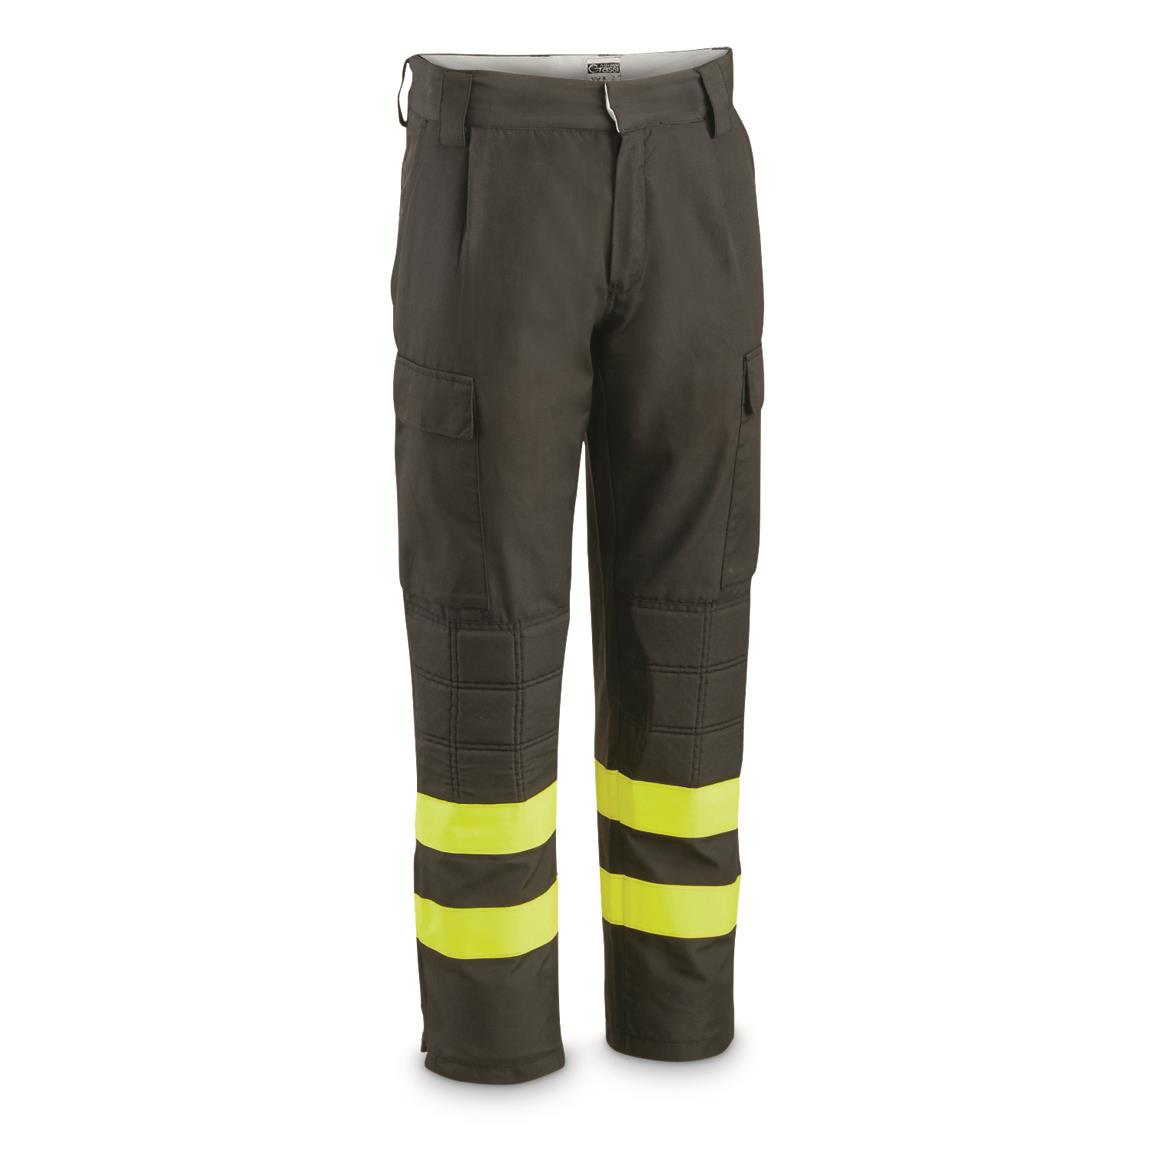 Italian Fire Service Surplus Aramid Firefighter Pants, Used